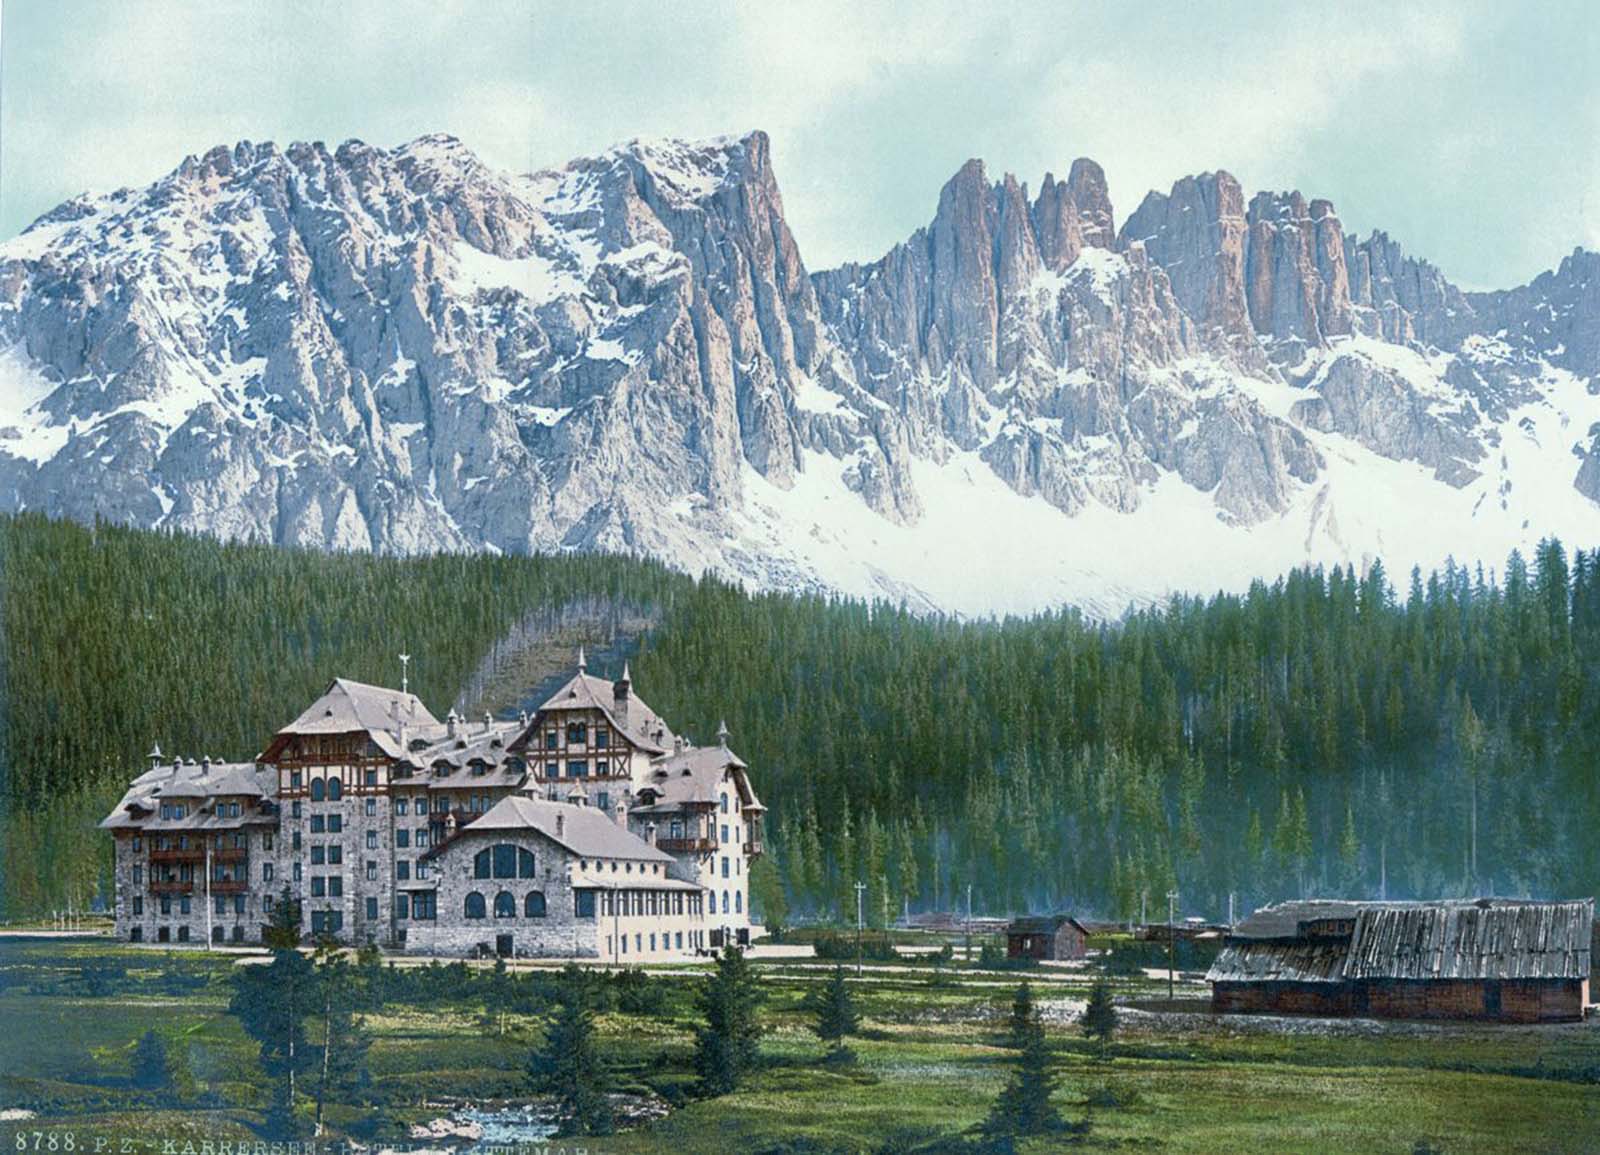 Il lago di Carezza, il suo hotel e il gruppo del Latemar, fotocromia vintage 1890